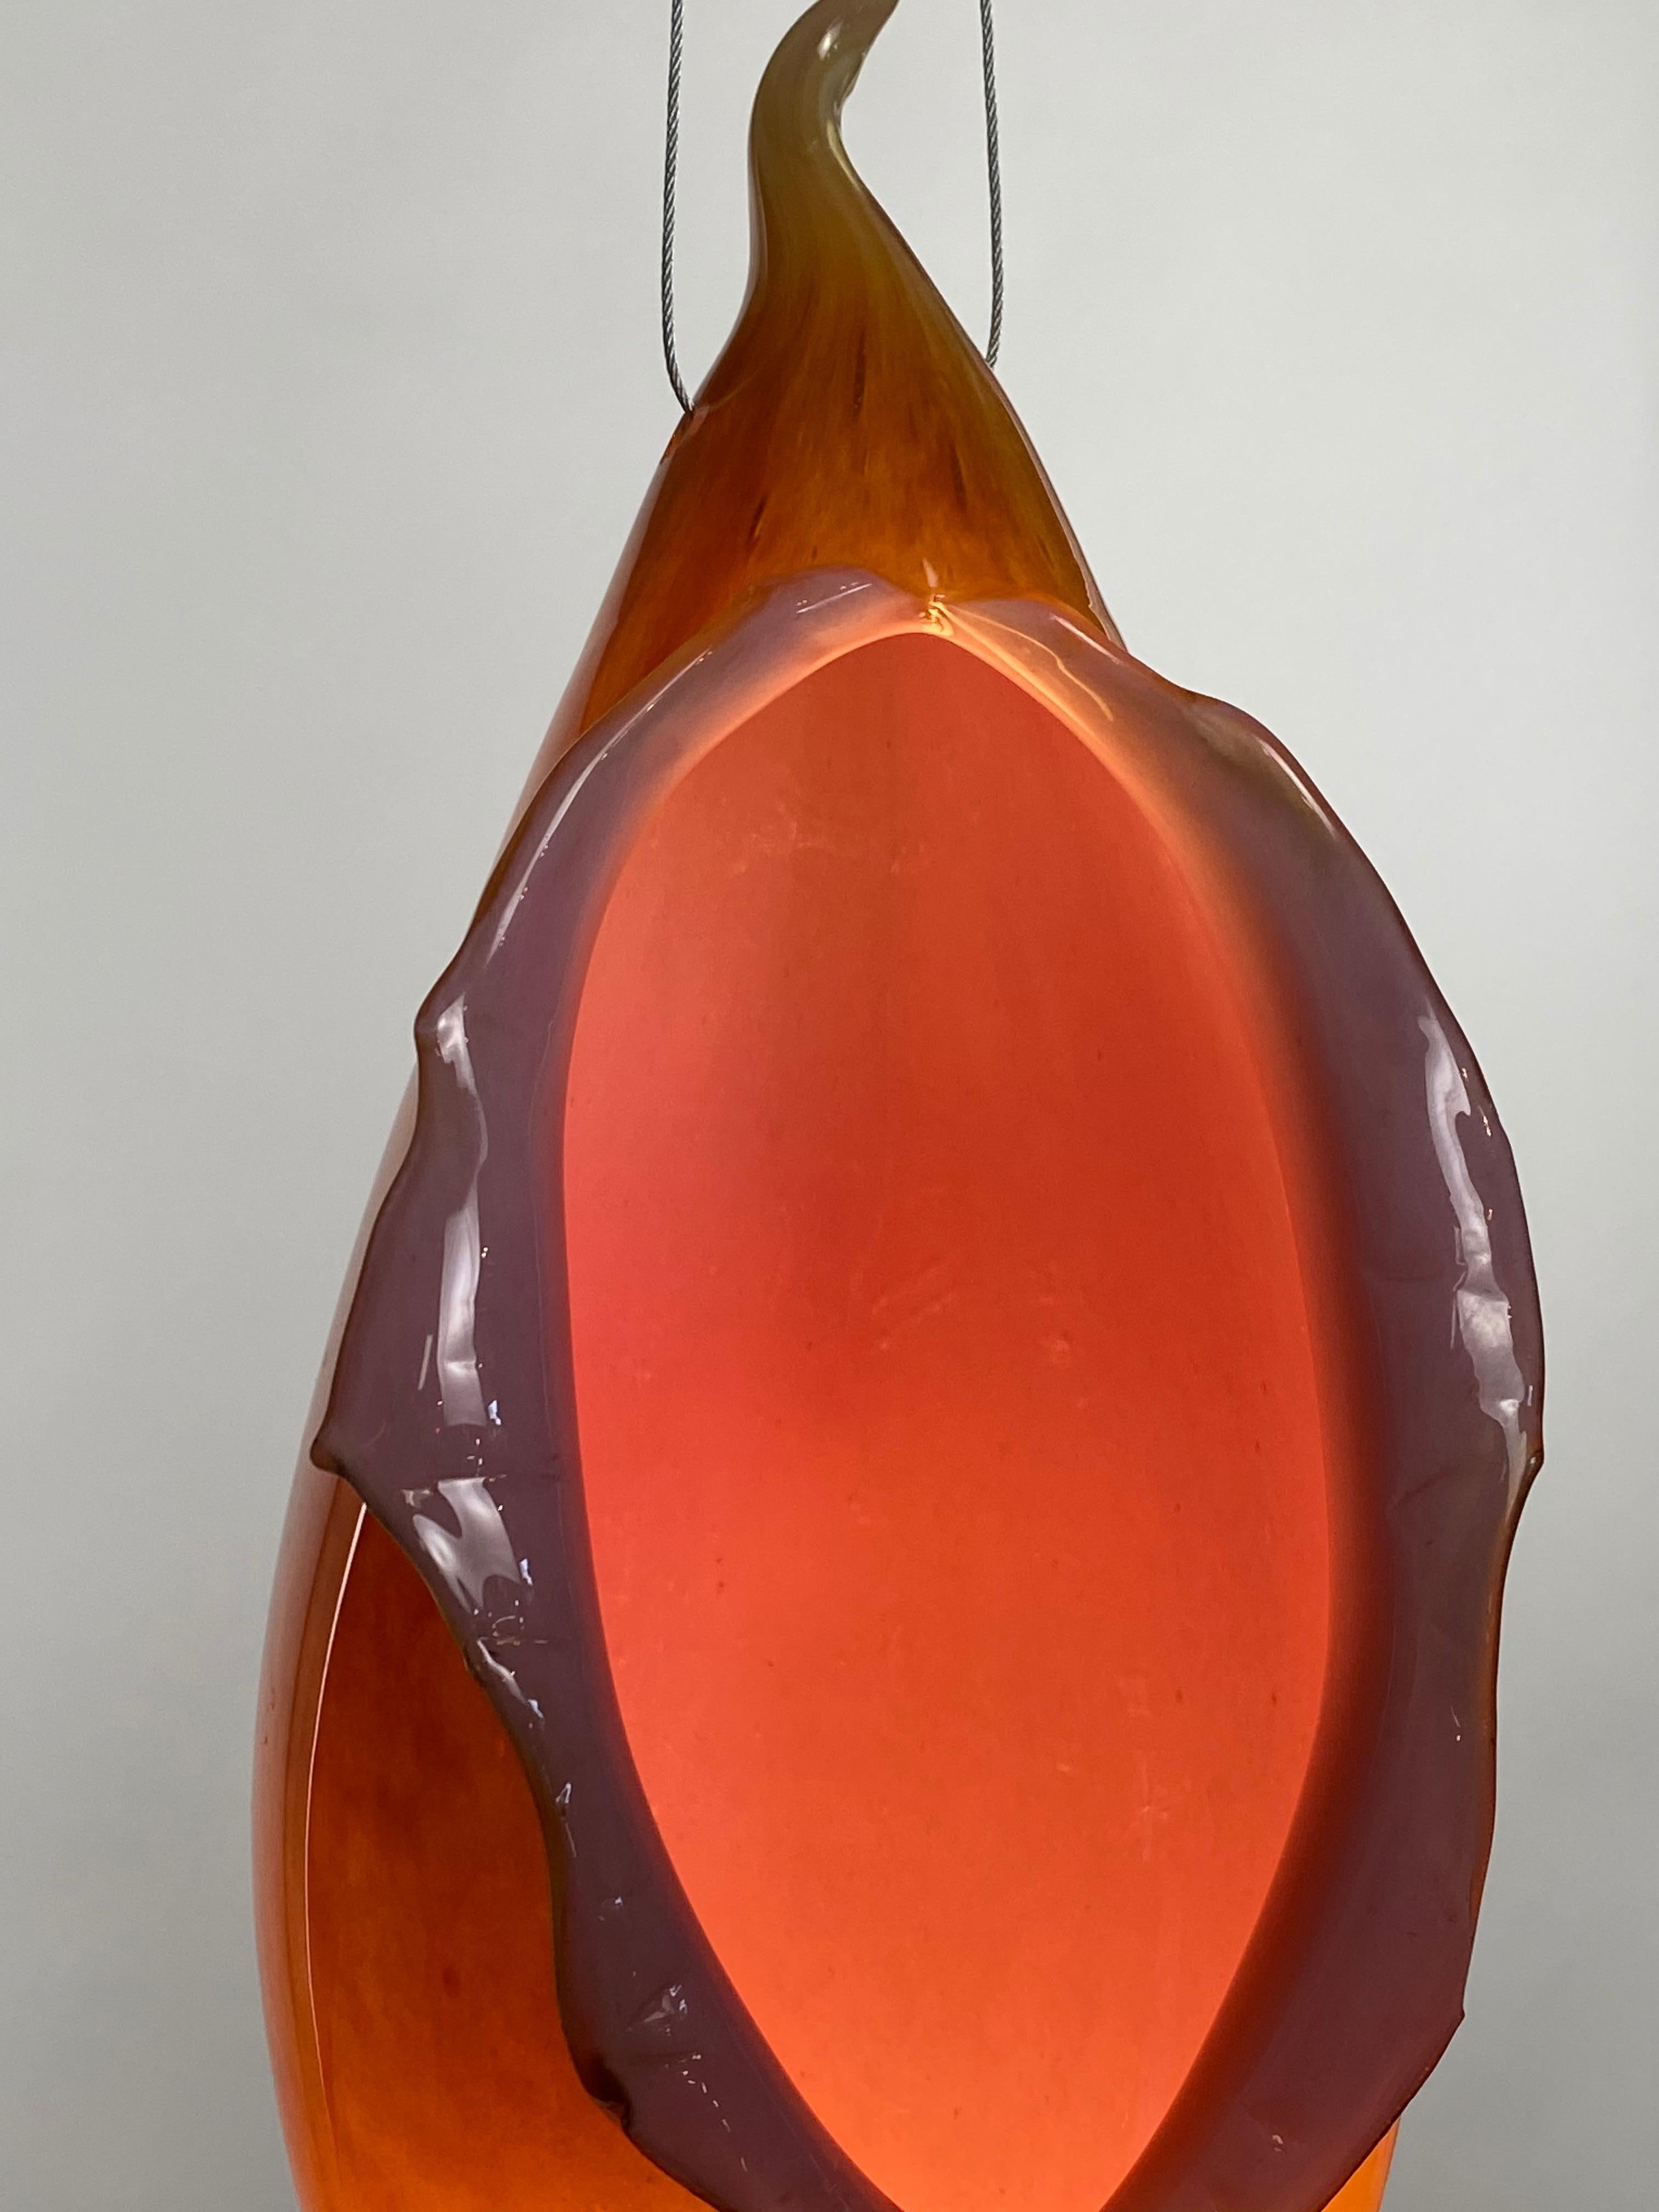 Américain Lampe à suspension en verre soufflé rose et orange, XXIe siècle, Mattia Biagi en vente